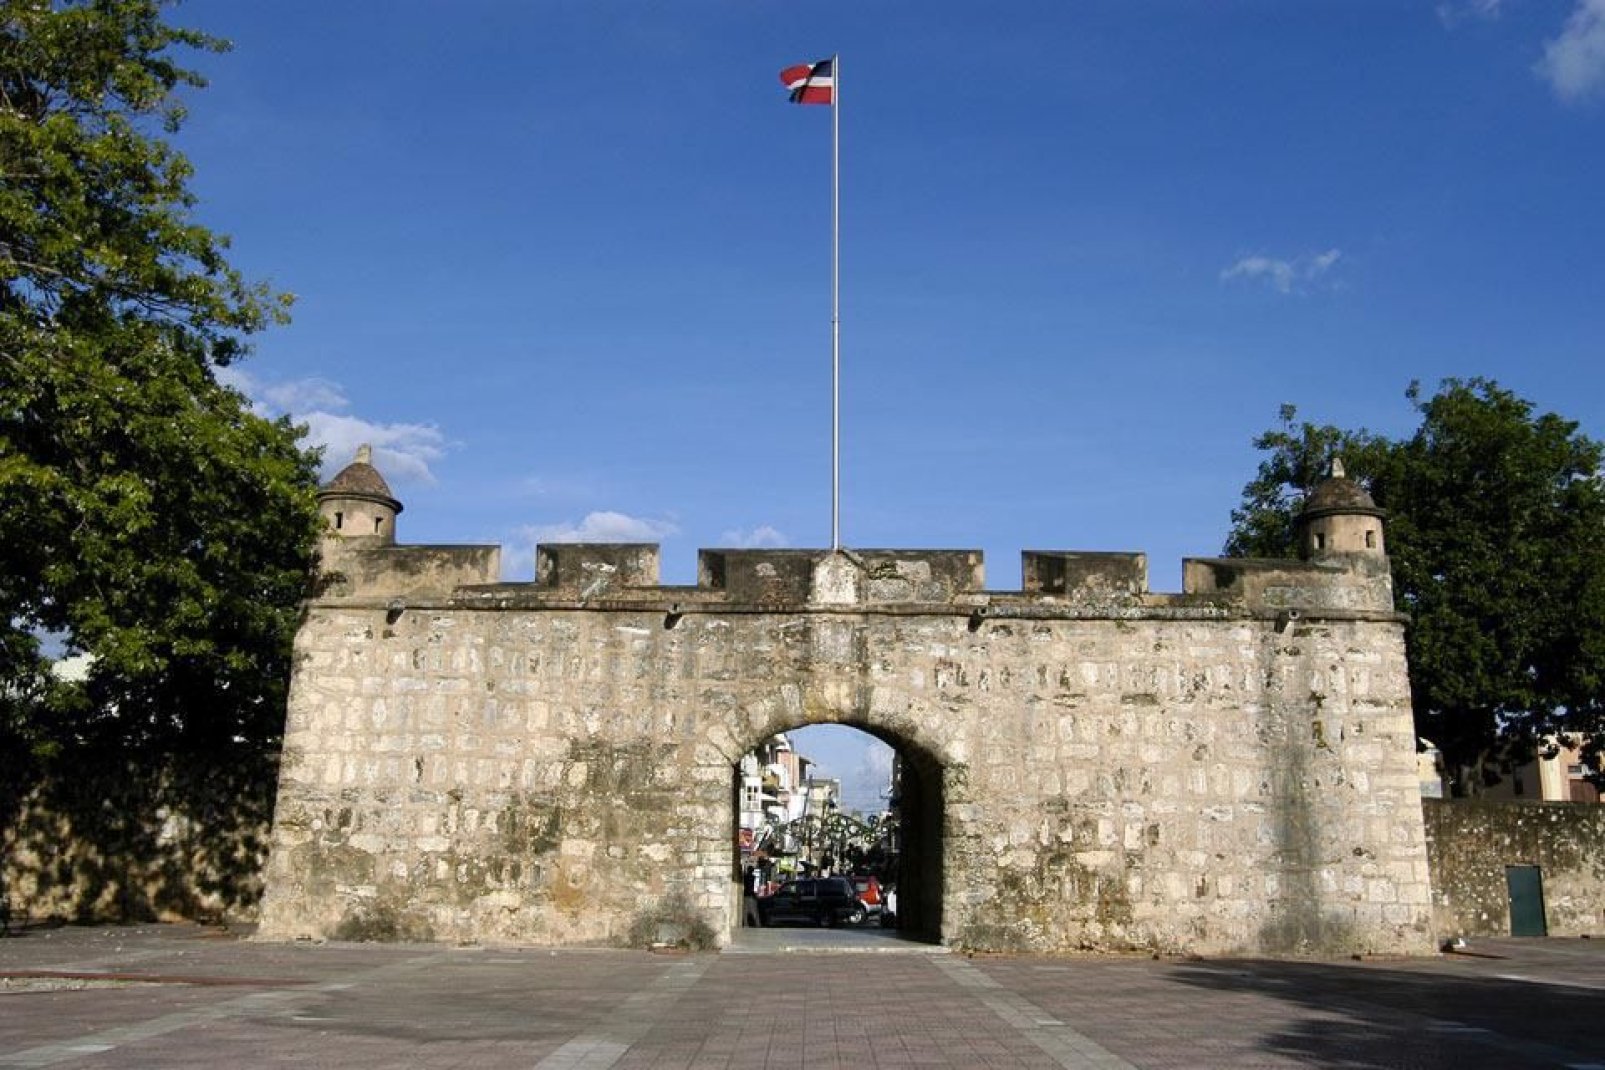 Ein majestätisch aussehendes, befestigtes Tor, ein baulicher Überrest der ehemaligen Stadtmauer der Kolonialzeit, befindet sich am hinteren Ende der Fußgängerstraße Calle del Conde.